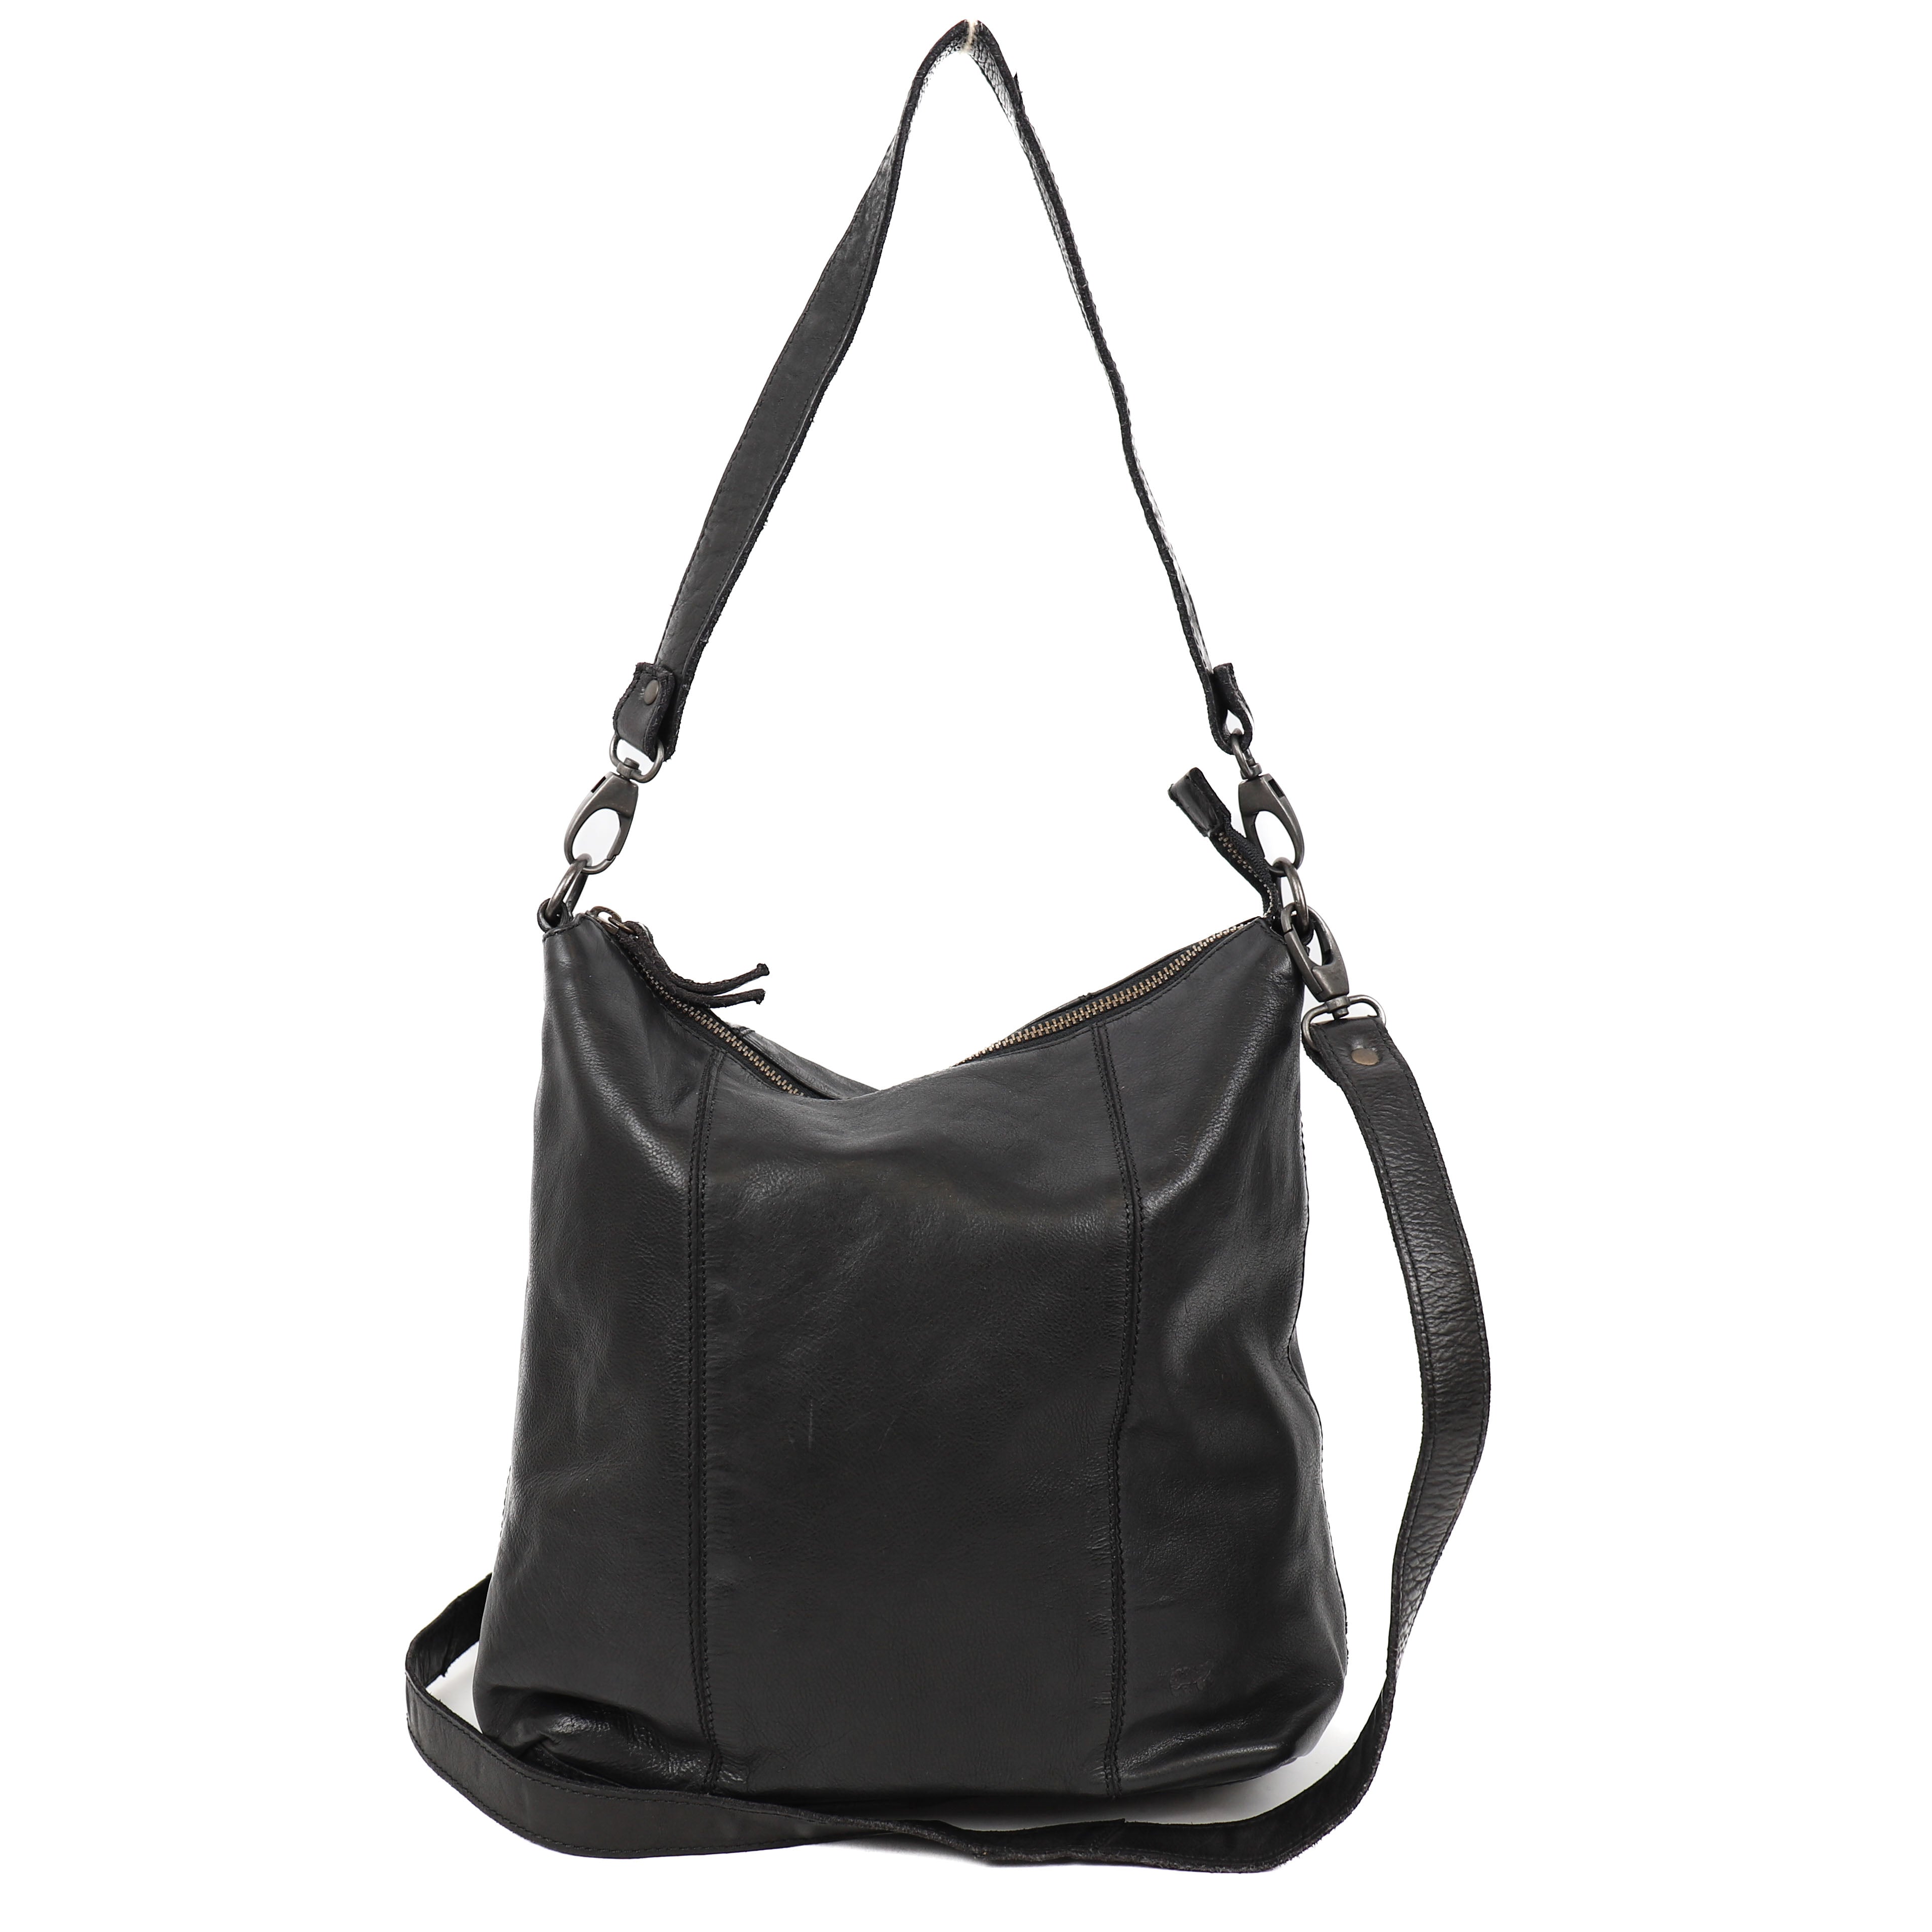 Hand/shoulder bag 'Ava' black